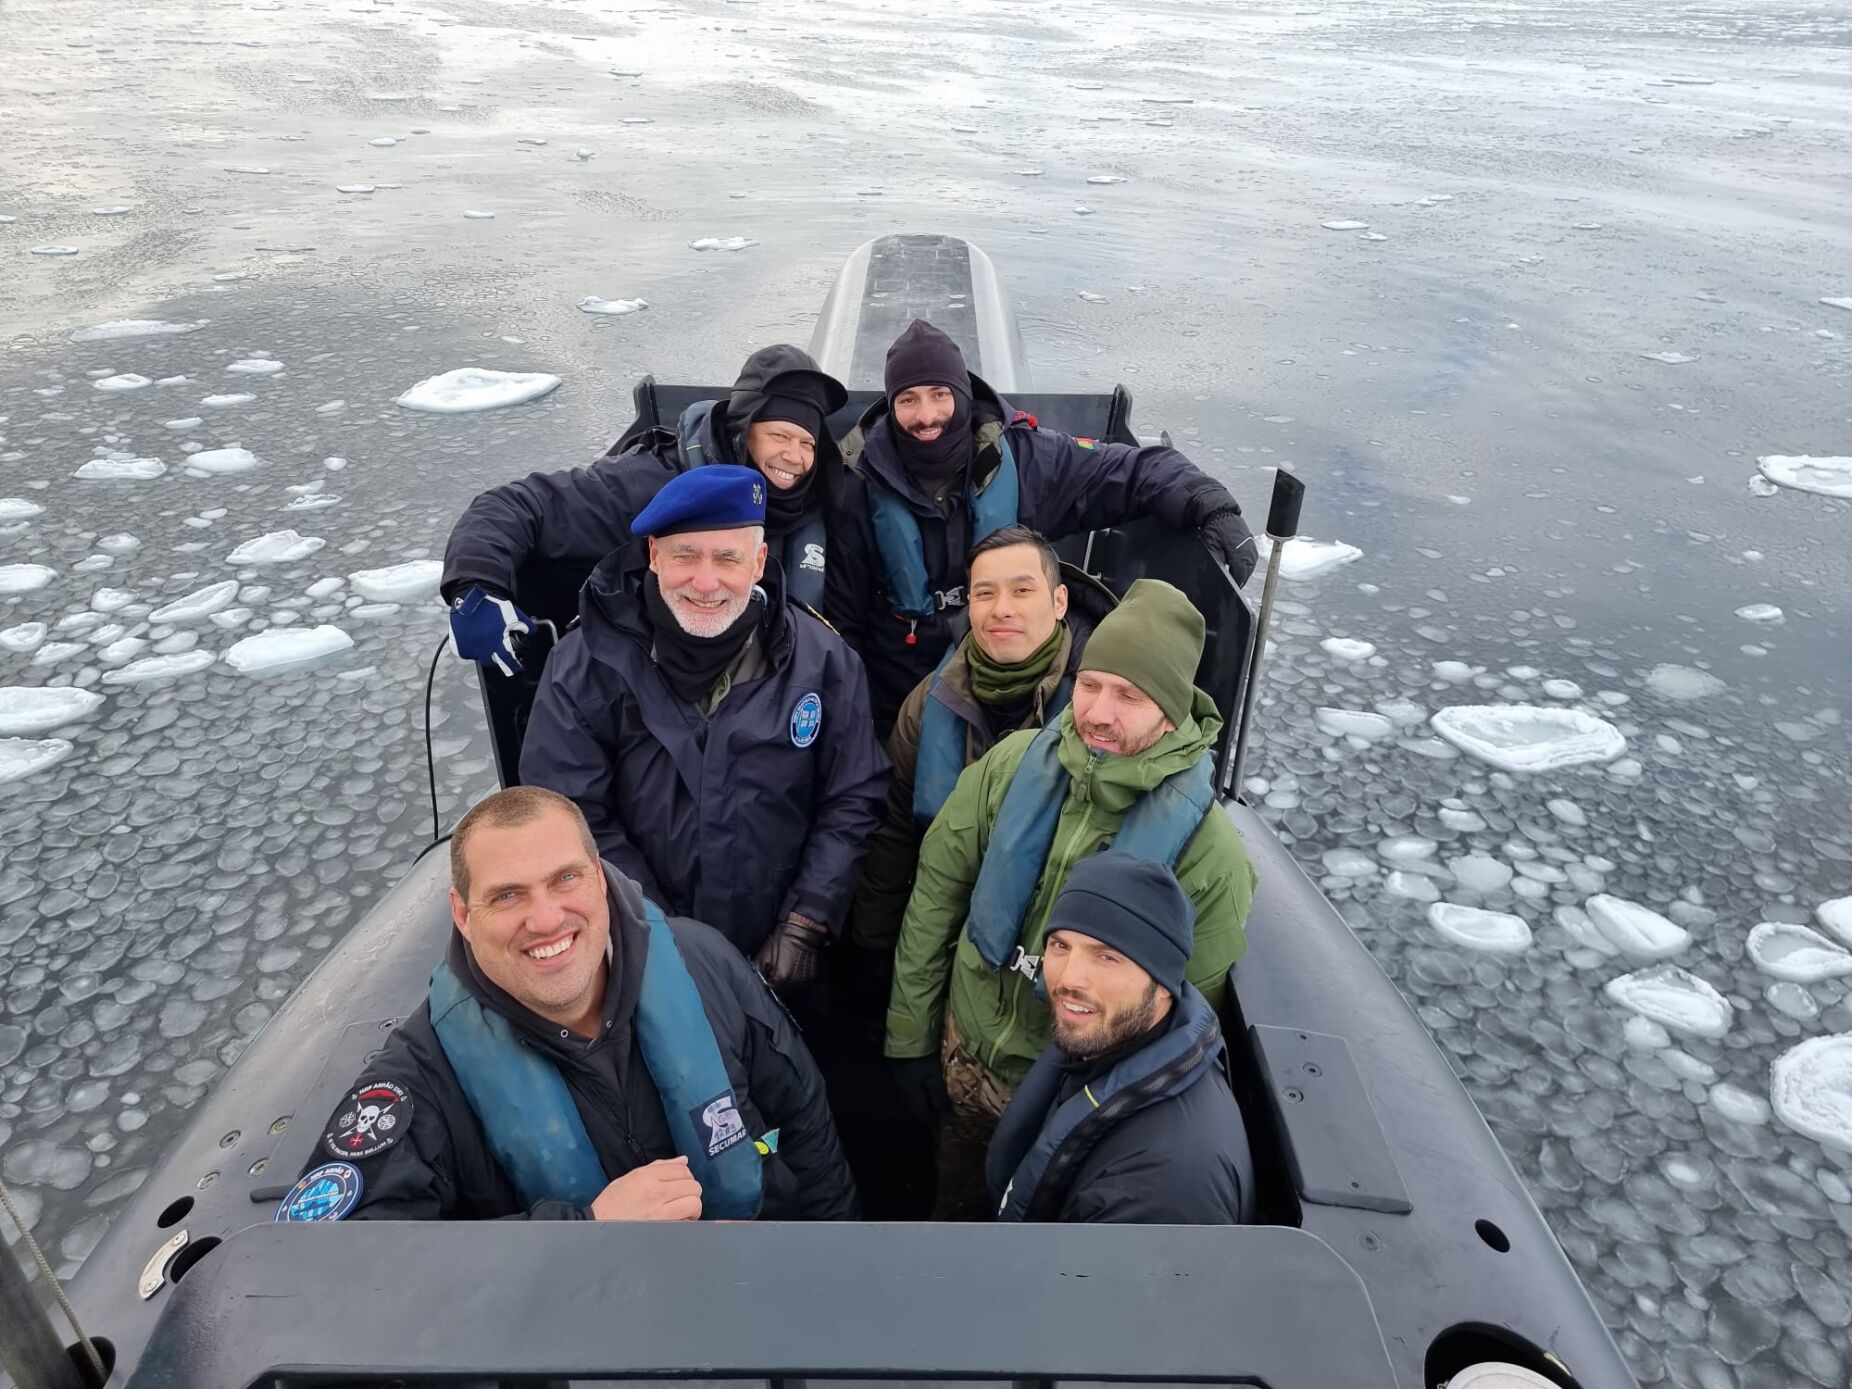 Gouveia e Melo quatro dias submerso em missão histórica de submarino português no Ártico